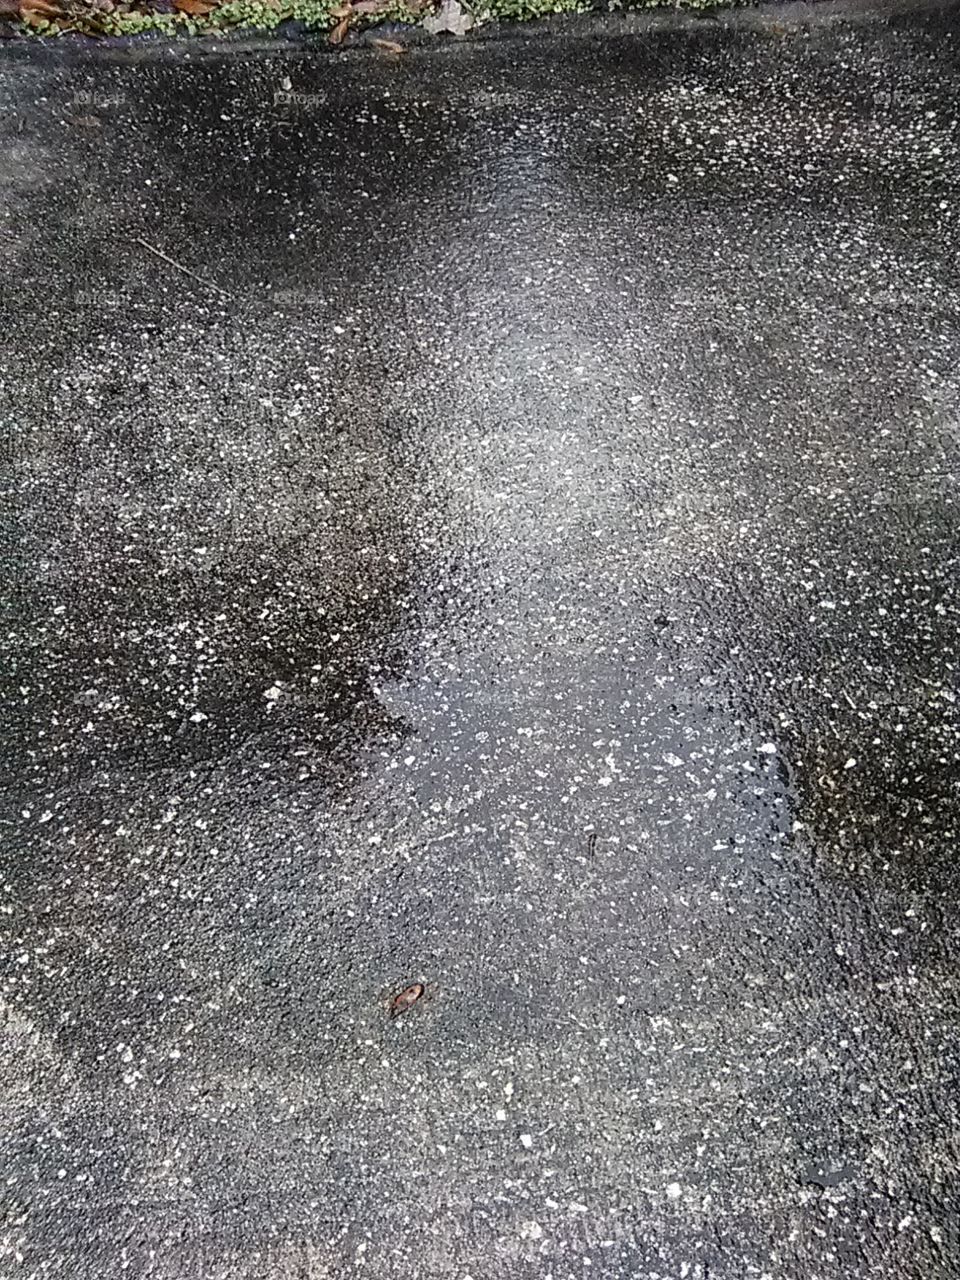 wet driveway